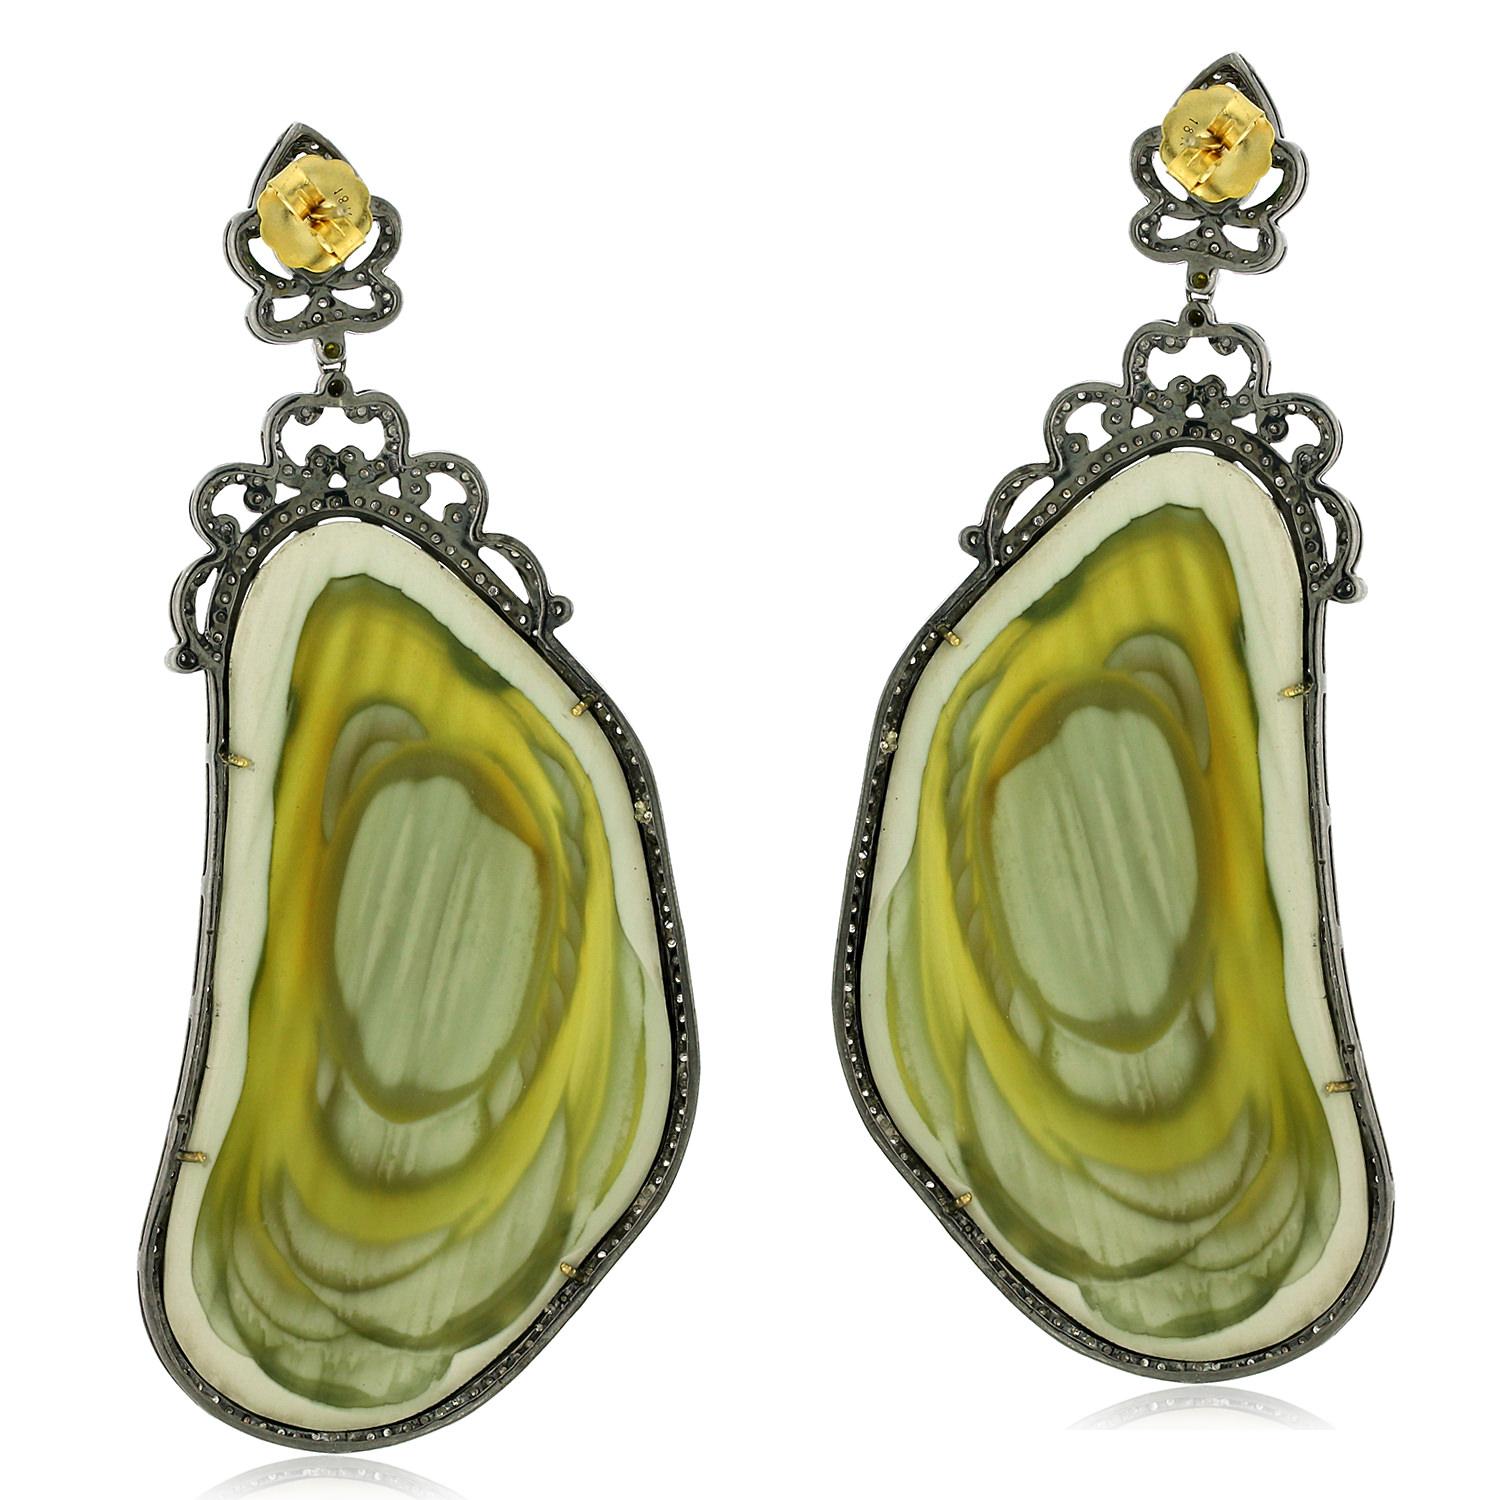 Ohrringe aus 18-karätigem Gold aus Jaspis in Nuggetform mit Smaragd und Diamanten in Pflasterung. Verleihen Sie Ihrem Look einen Hauch von Luxus mit diesen einzigartigen, stilvollen